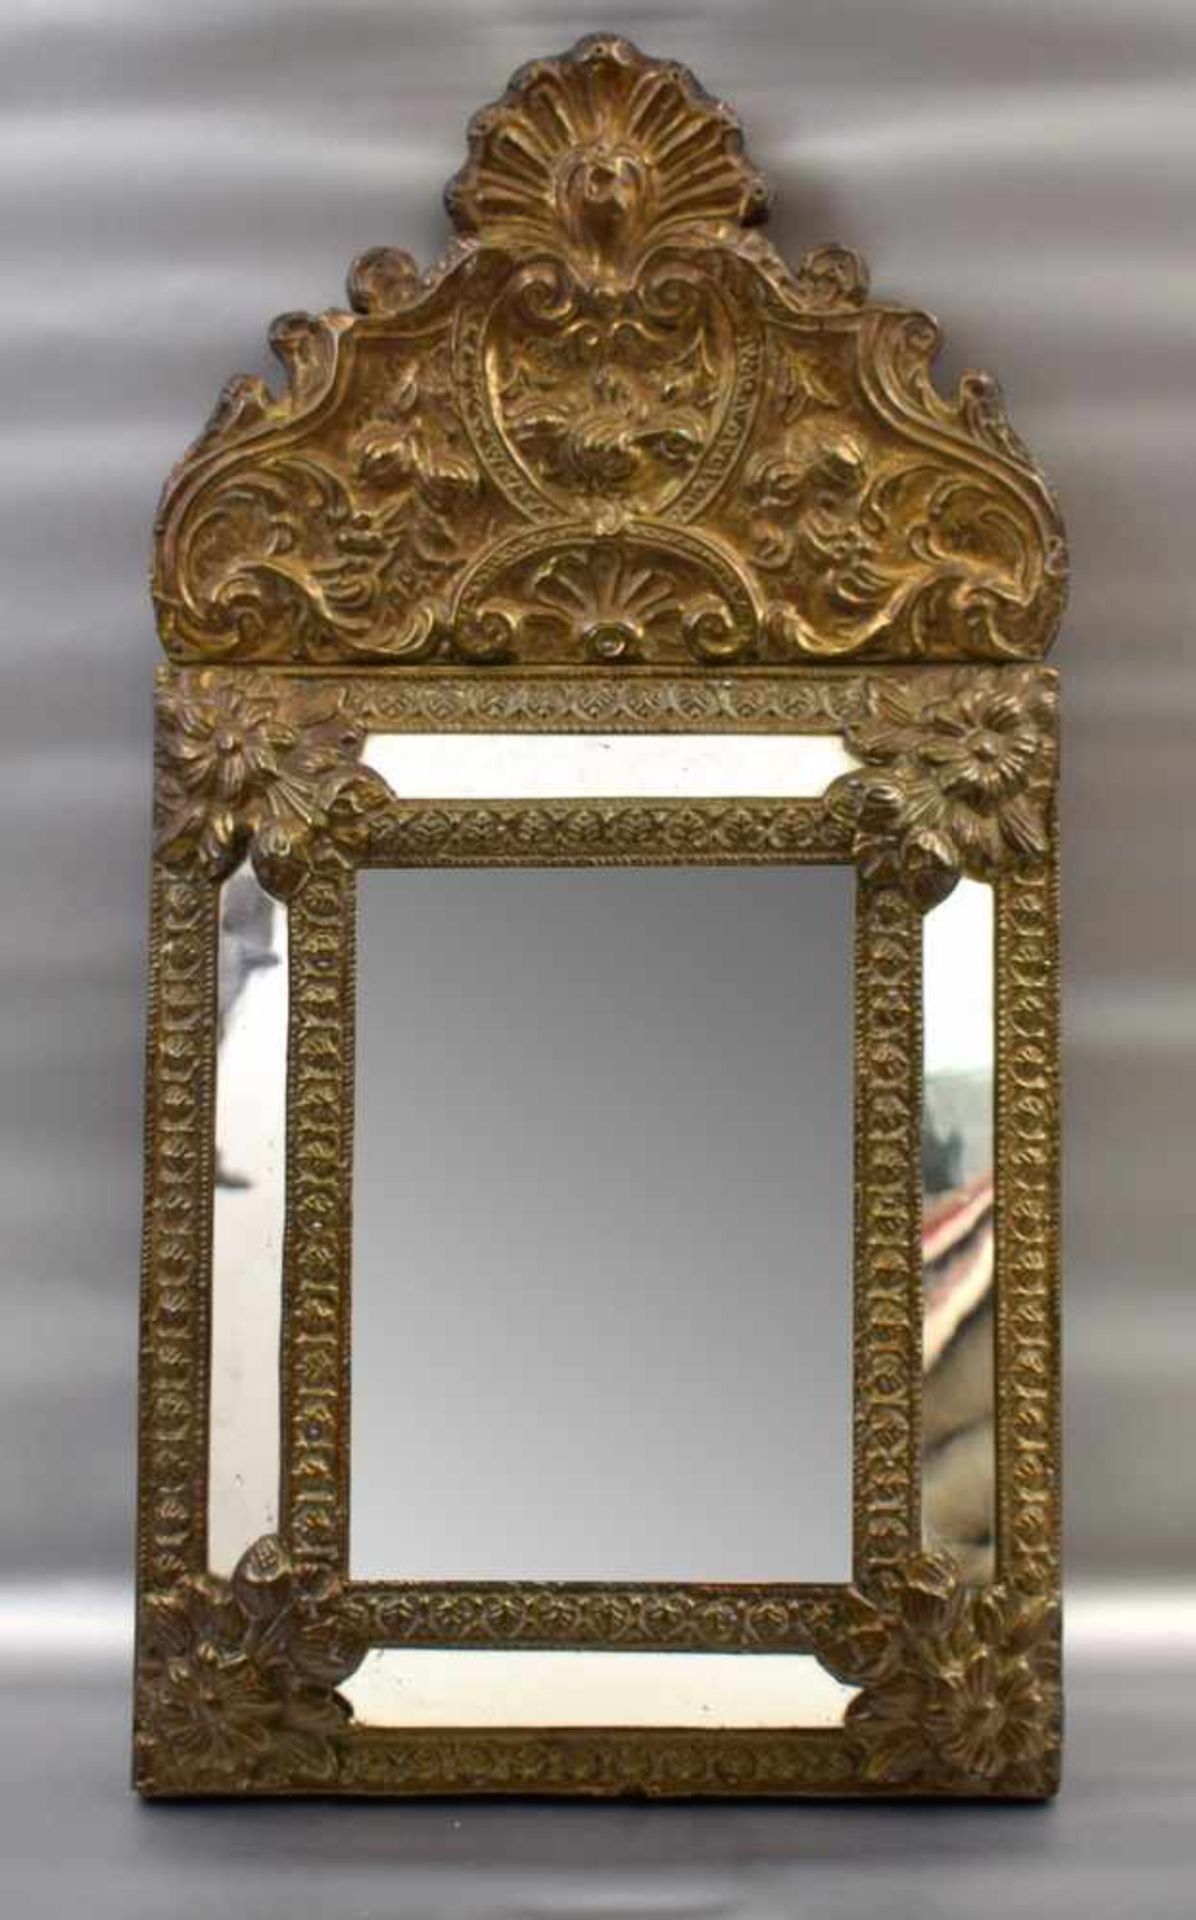 Holländischer Spiegel Messing, rechteckig, breiter Rand, mit Blumenranken und Ornamenten verziert,